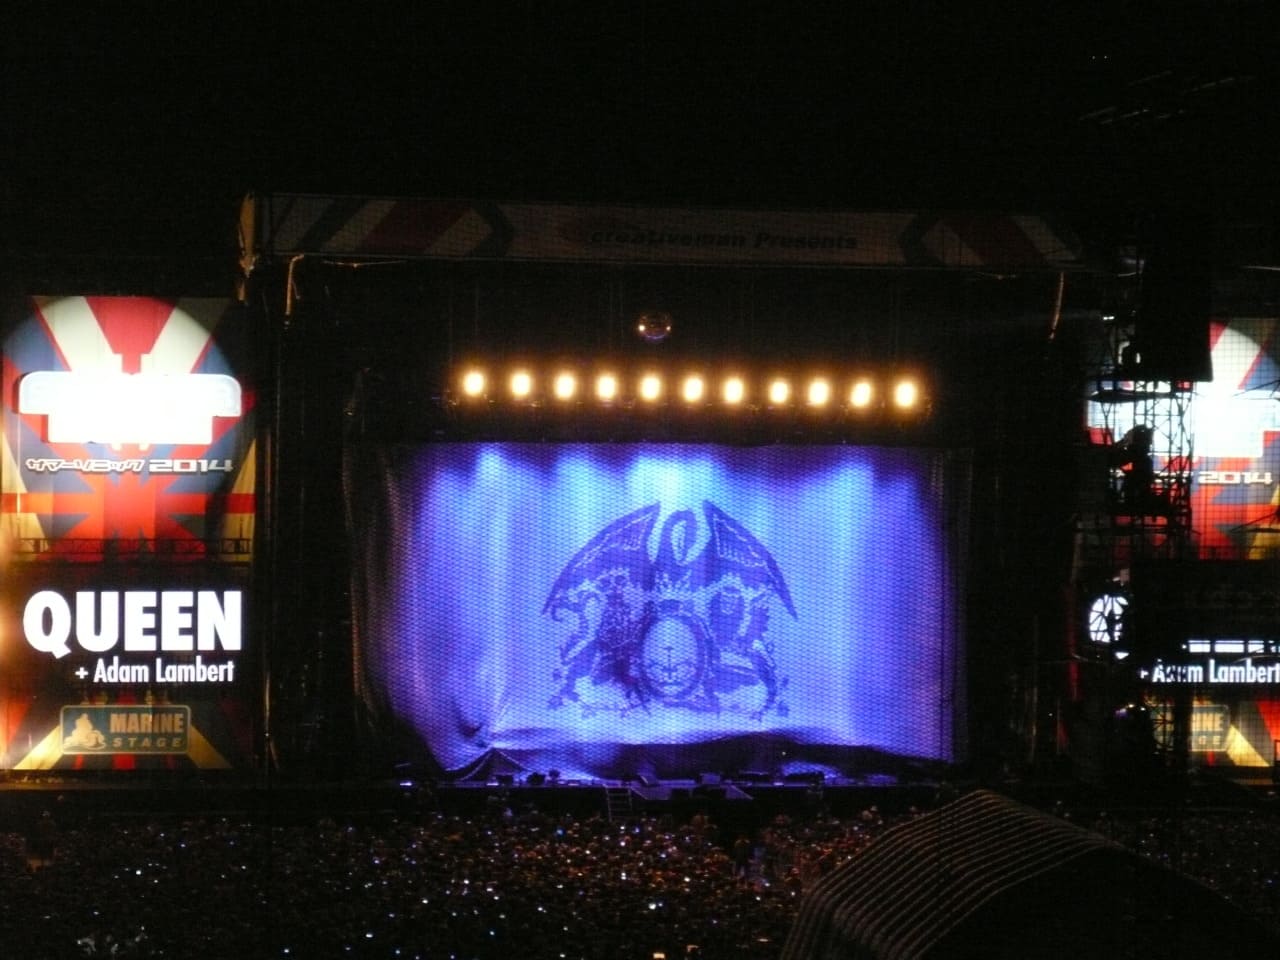 Queen + Adam Lambert Summer Sonic 2014 – Marine Stage